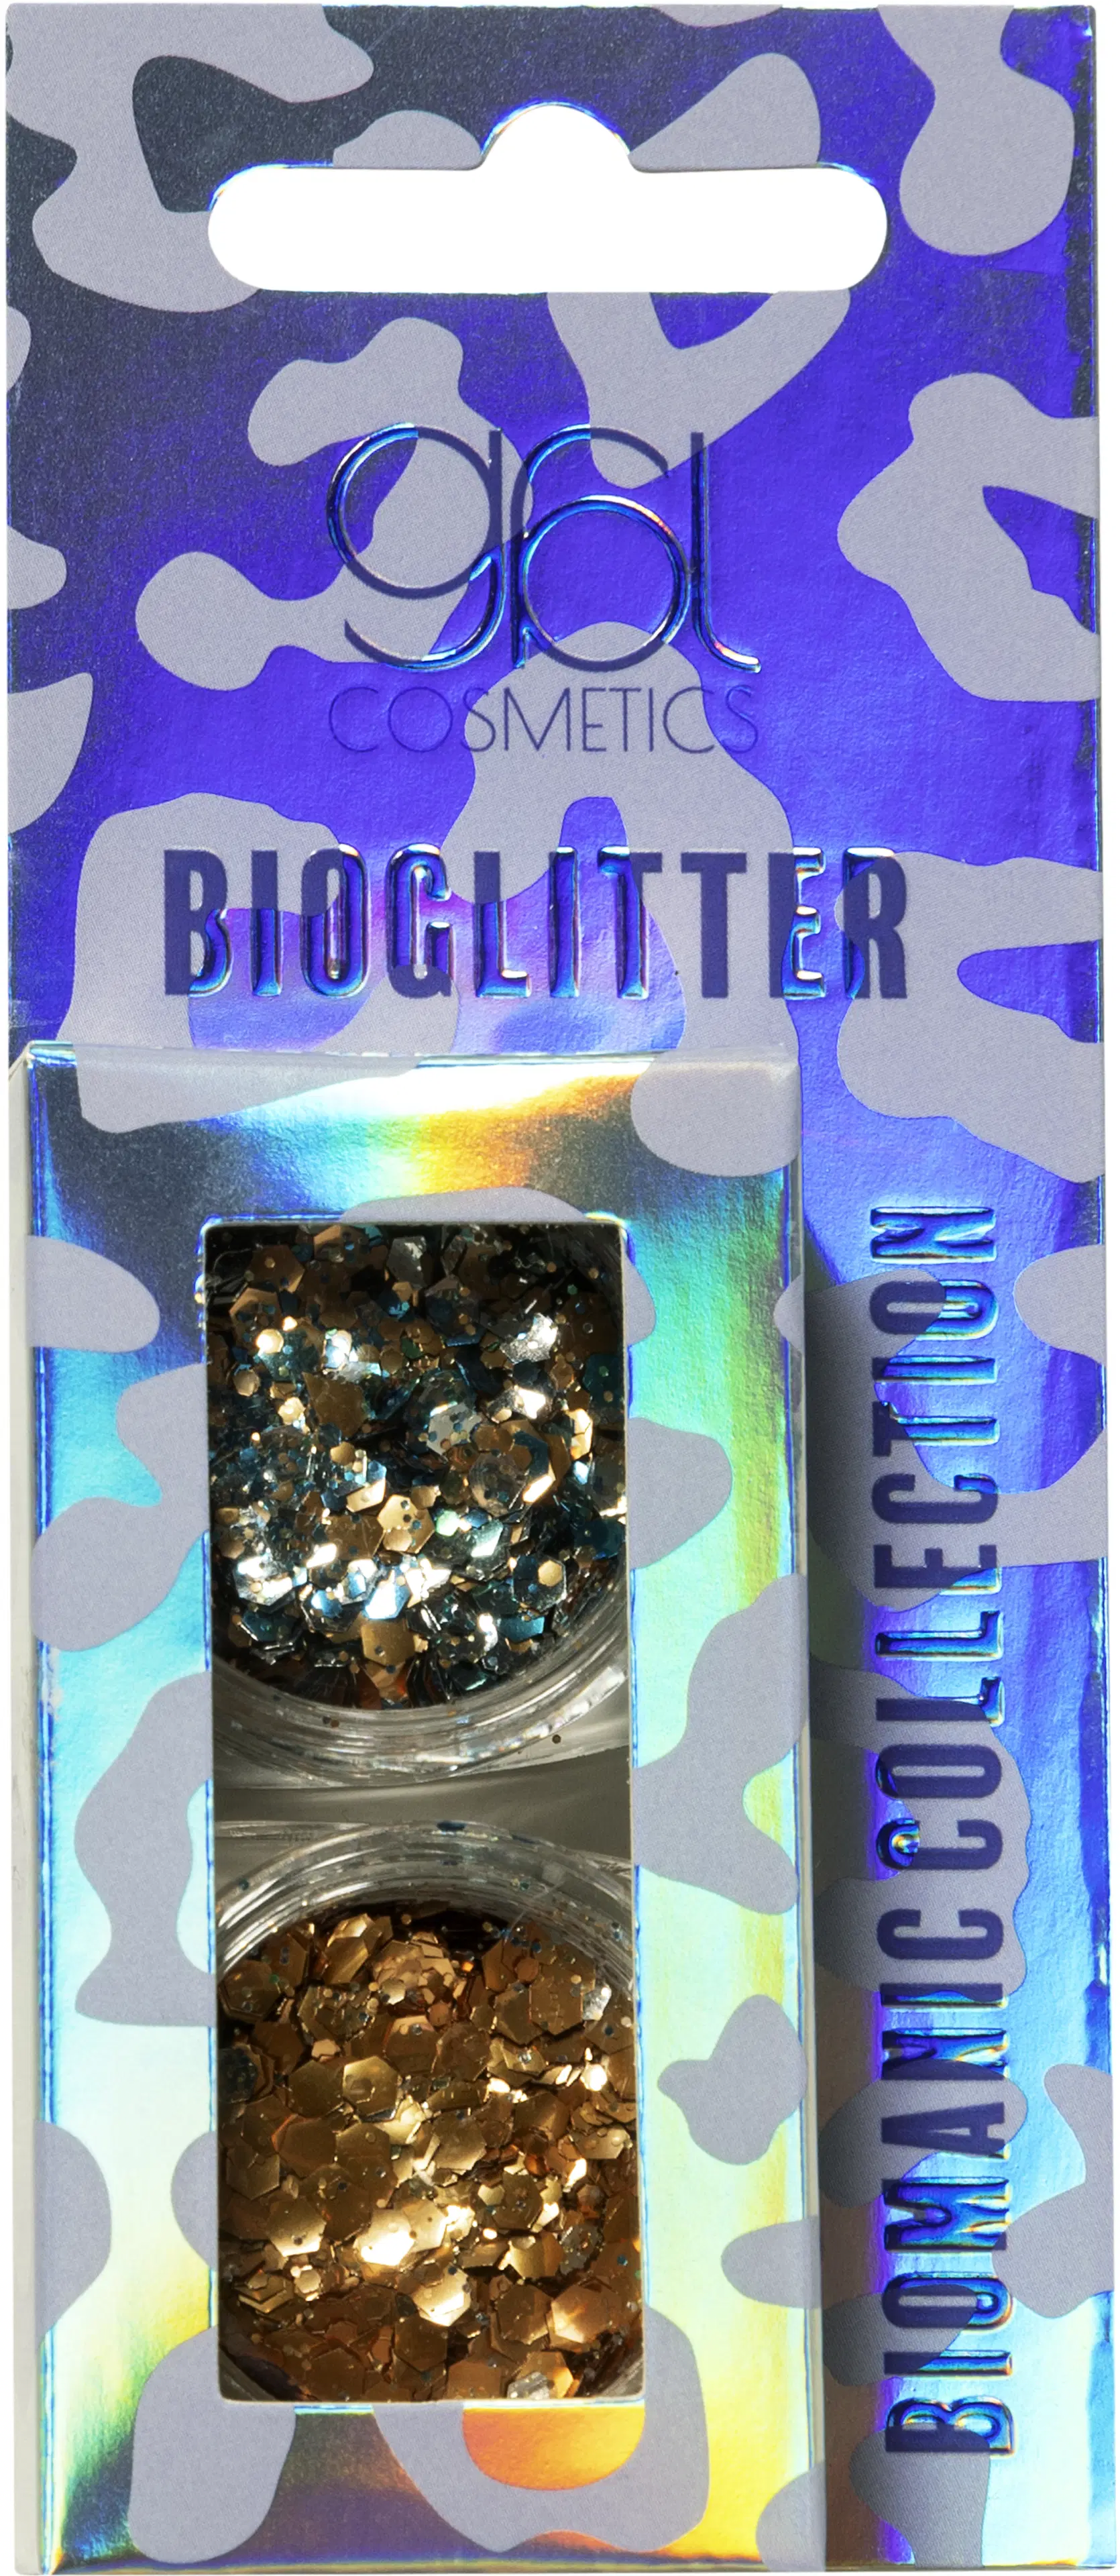 GBL Cosmetics Biomanic bioglitter lunar